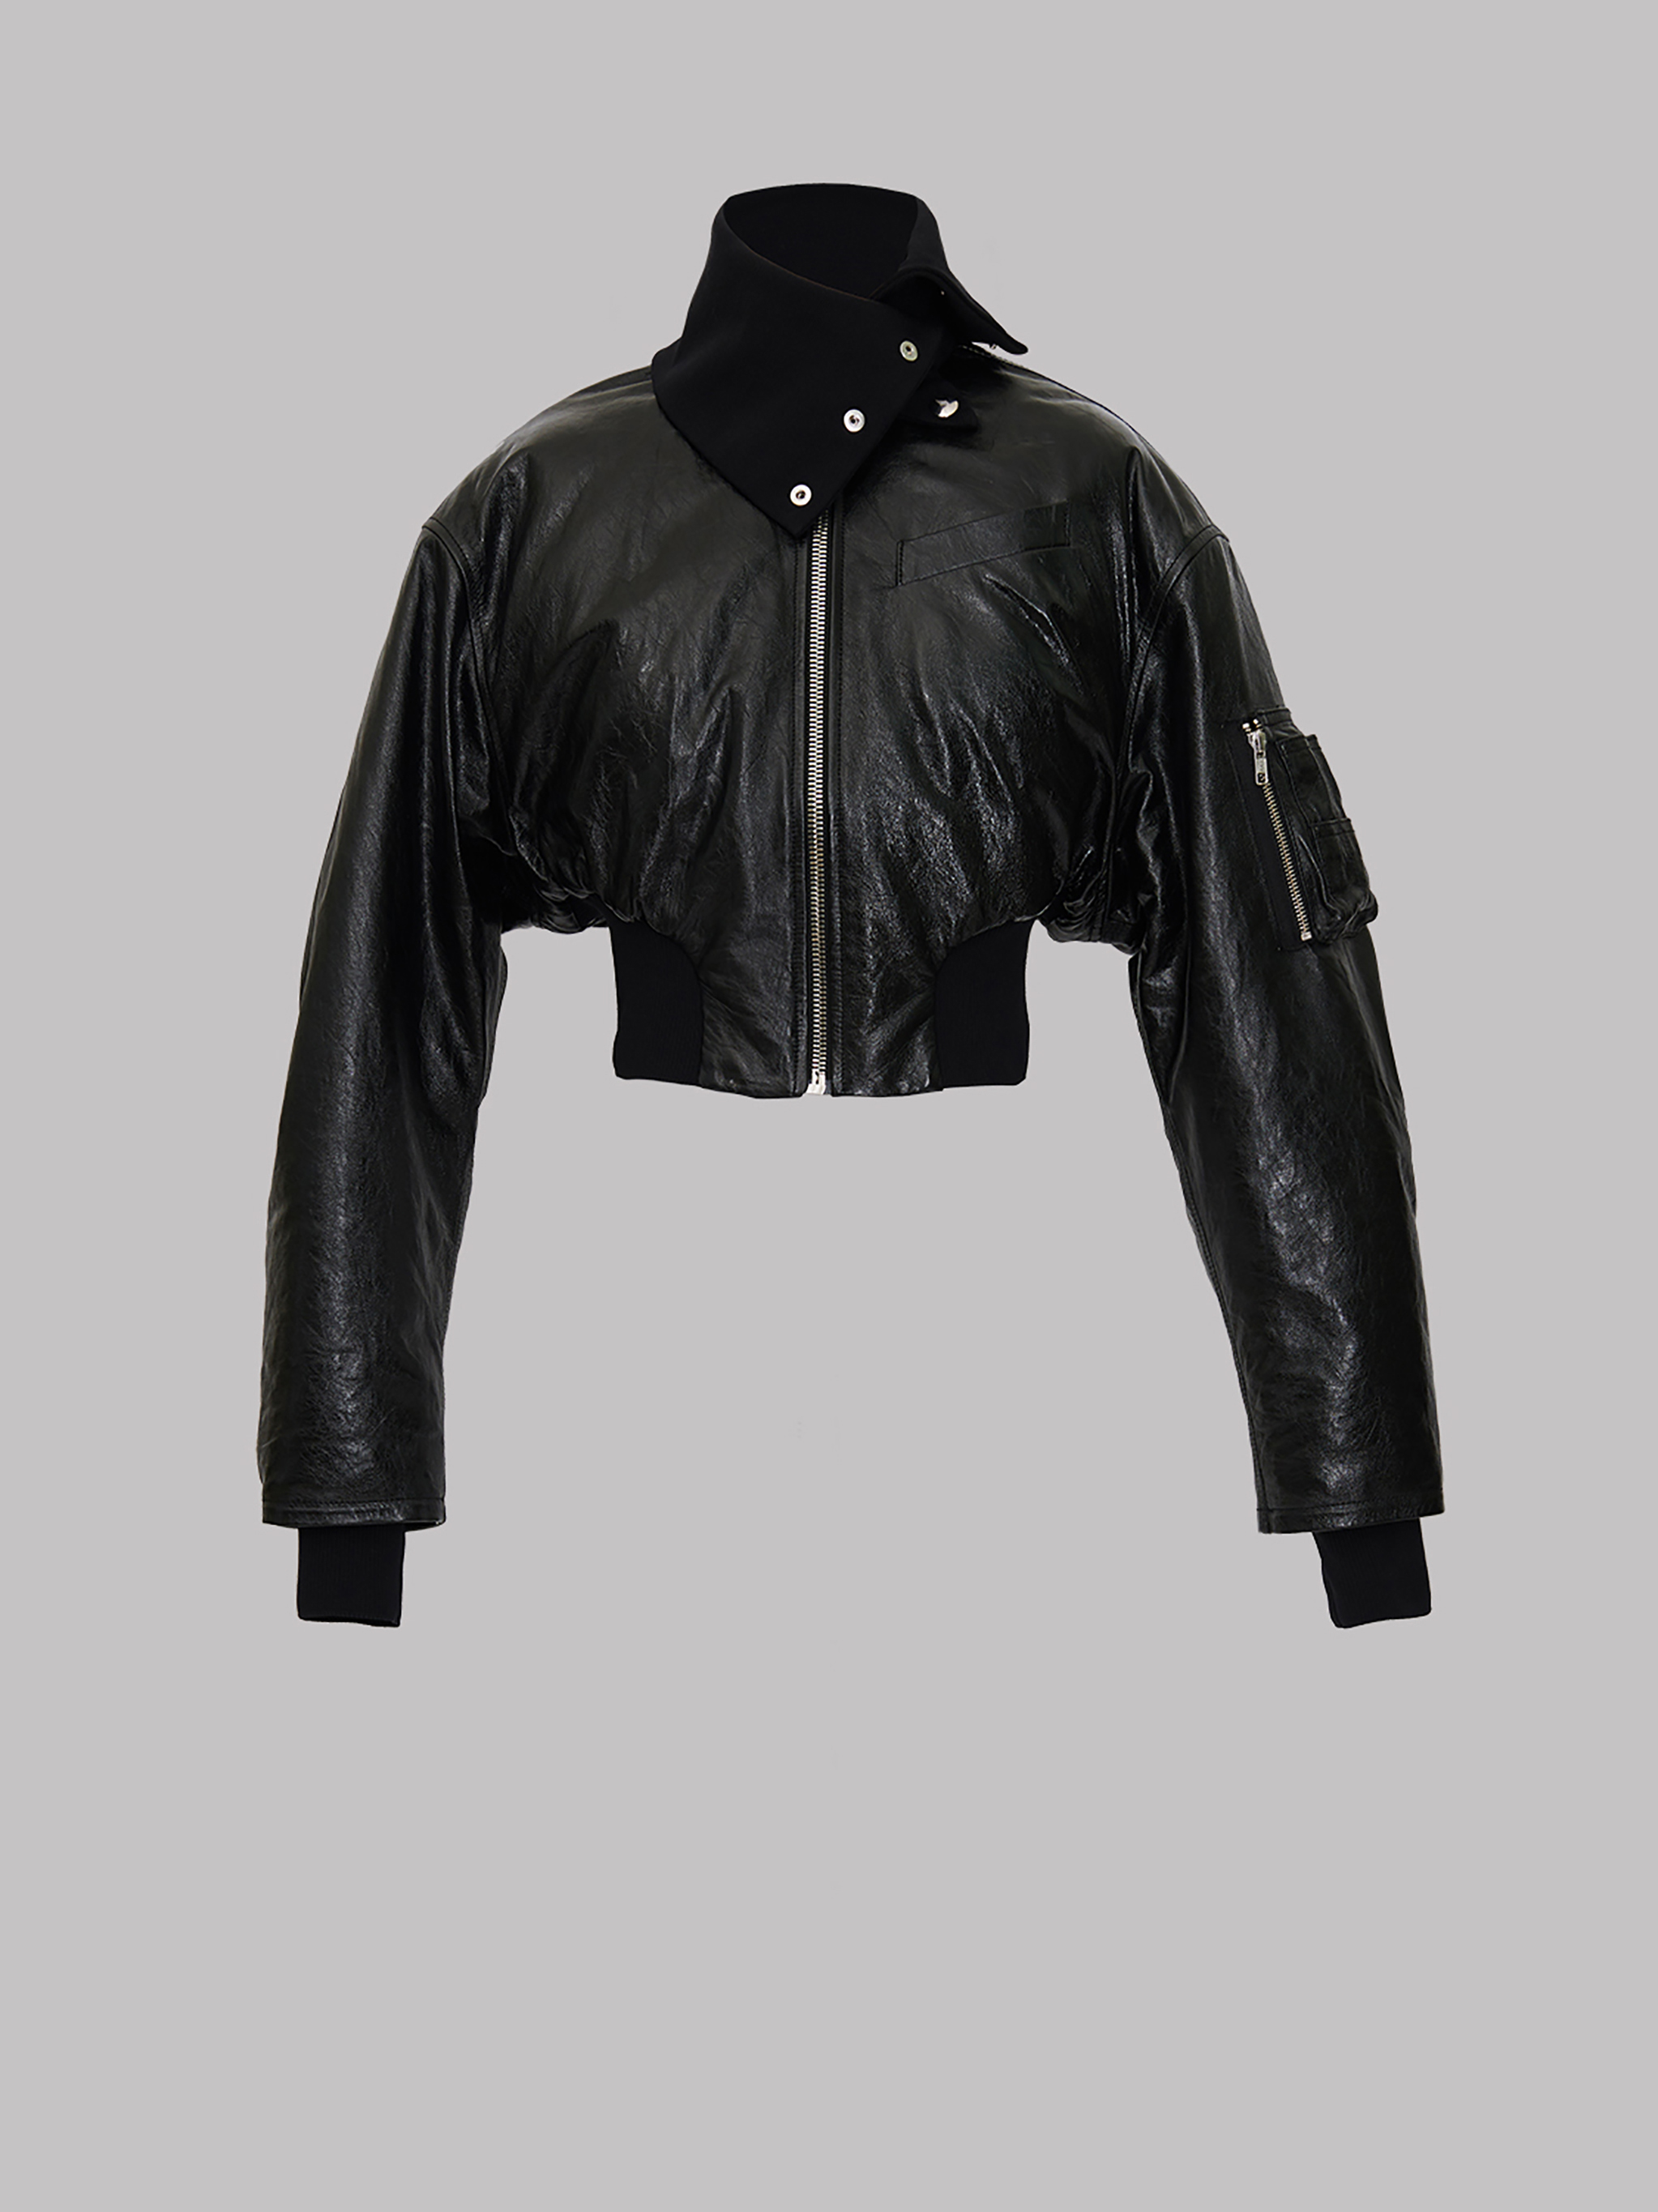 Jackets and Coats | The Attico